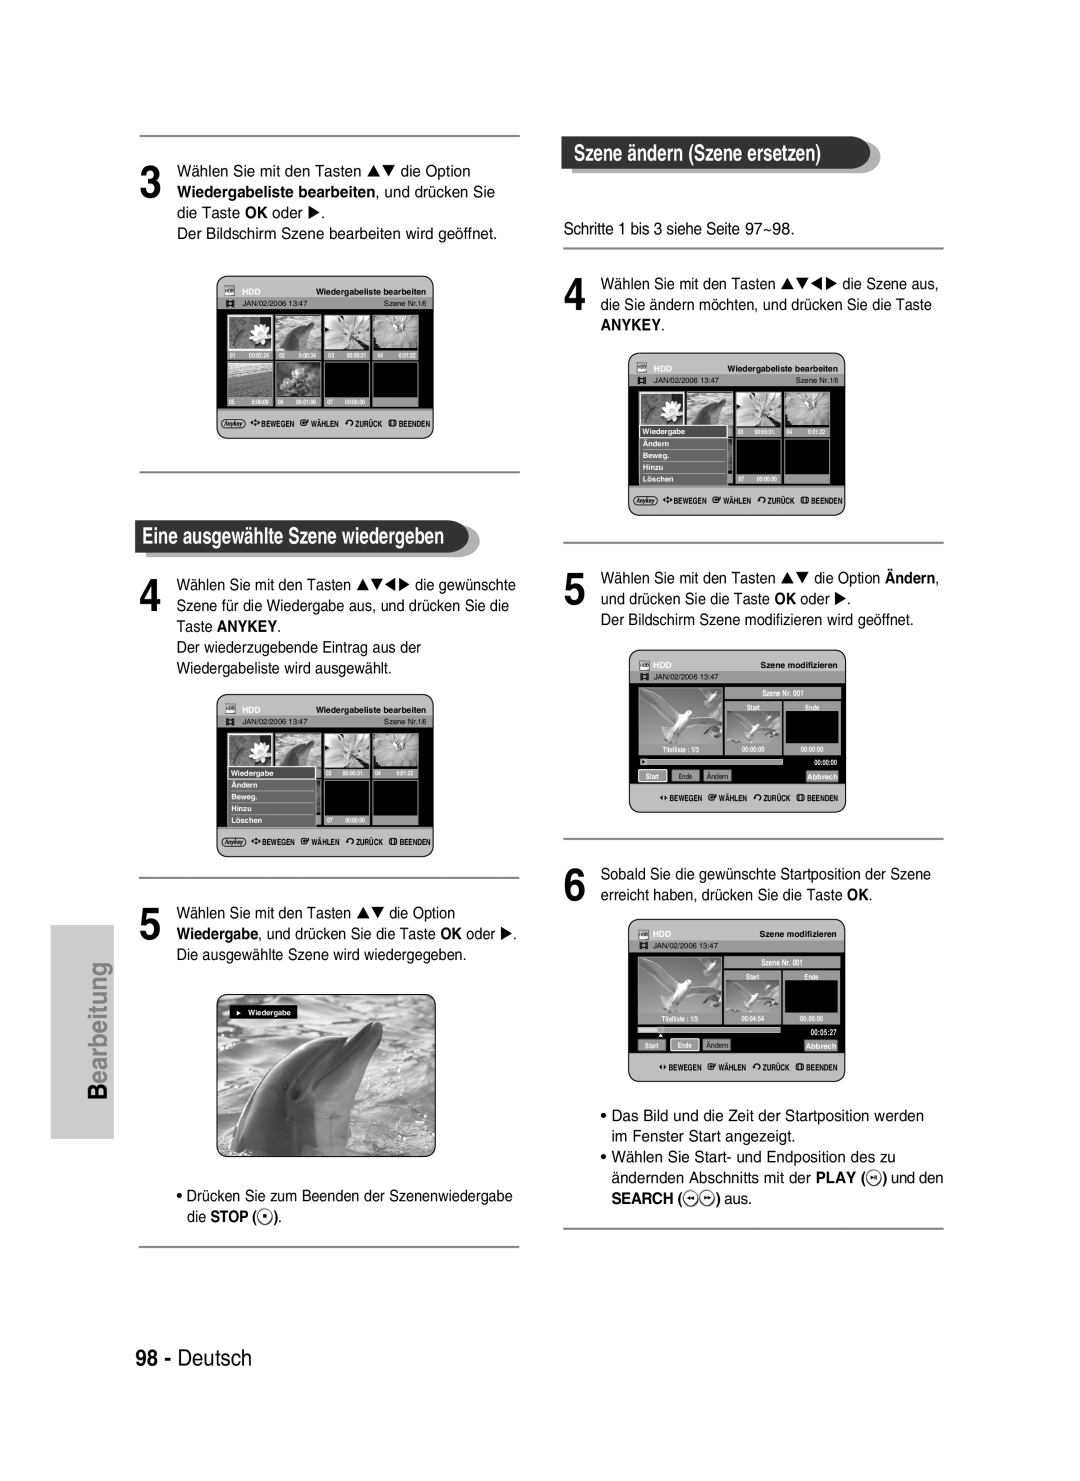 Samsung DVD-HR734/XEG manual Eine ausgewählte Szene wiedergeben, Deutsch, Szene ändern Szene ersetzen, Anykey, SEARCH aus 